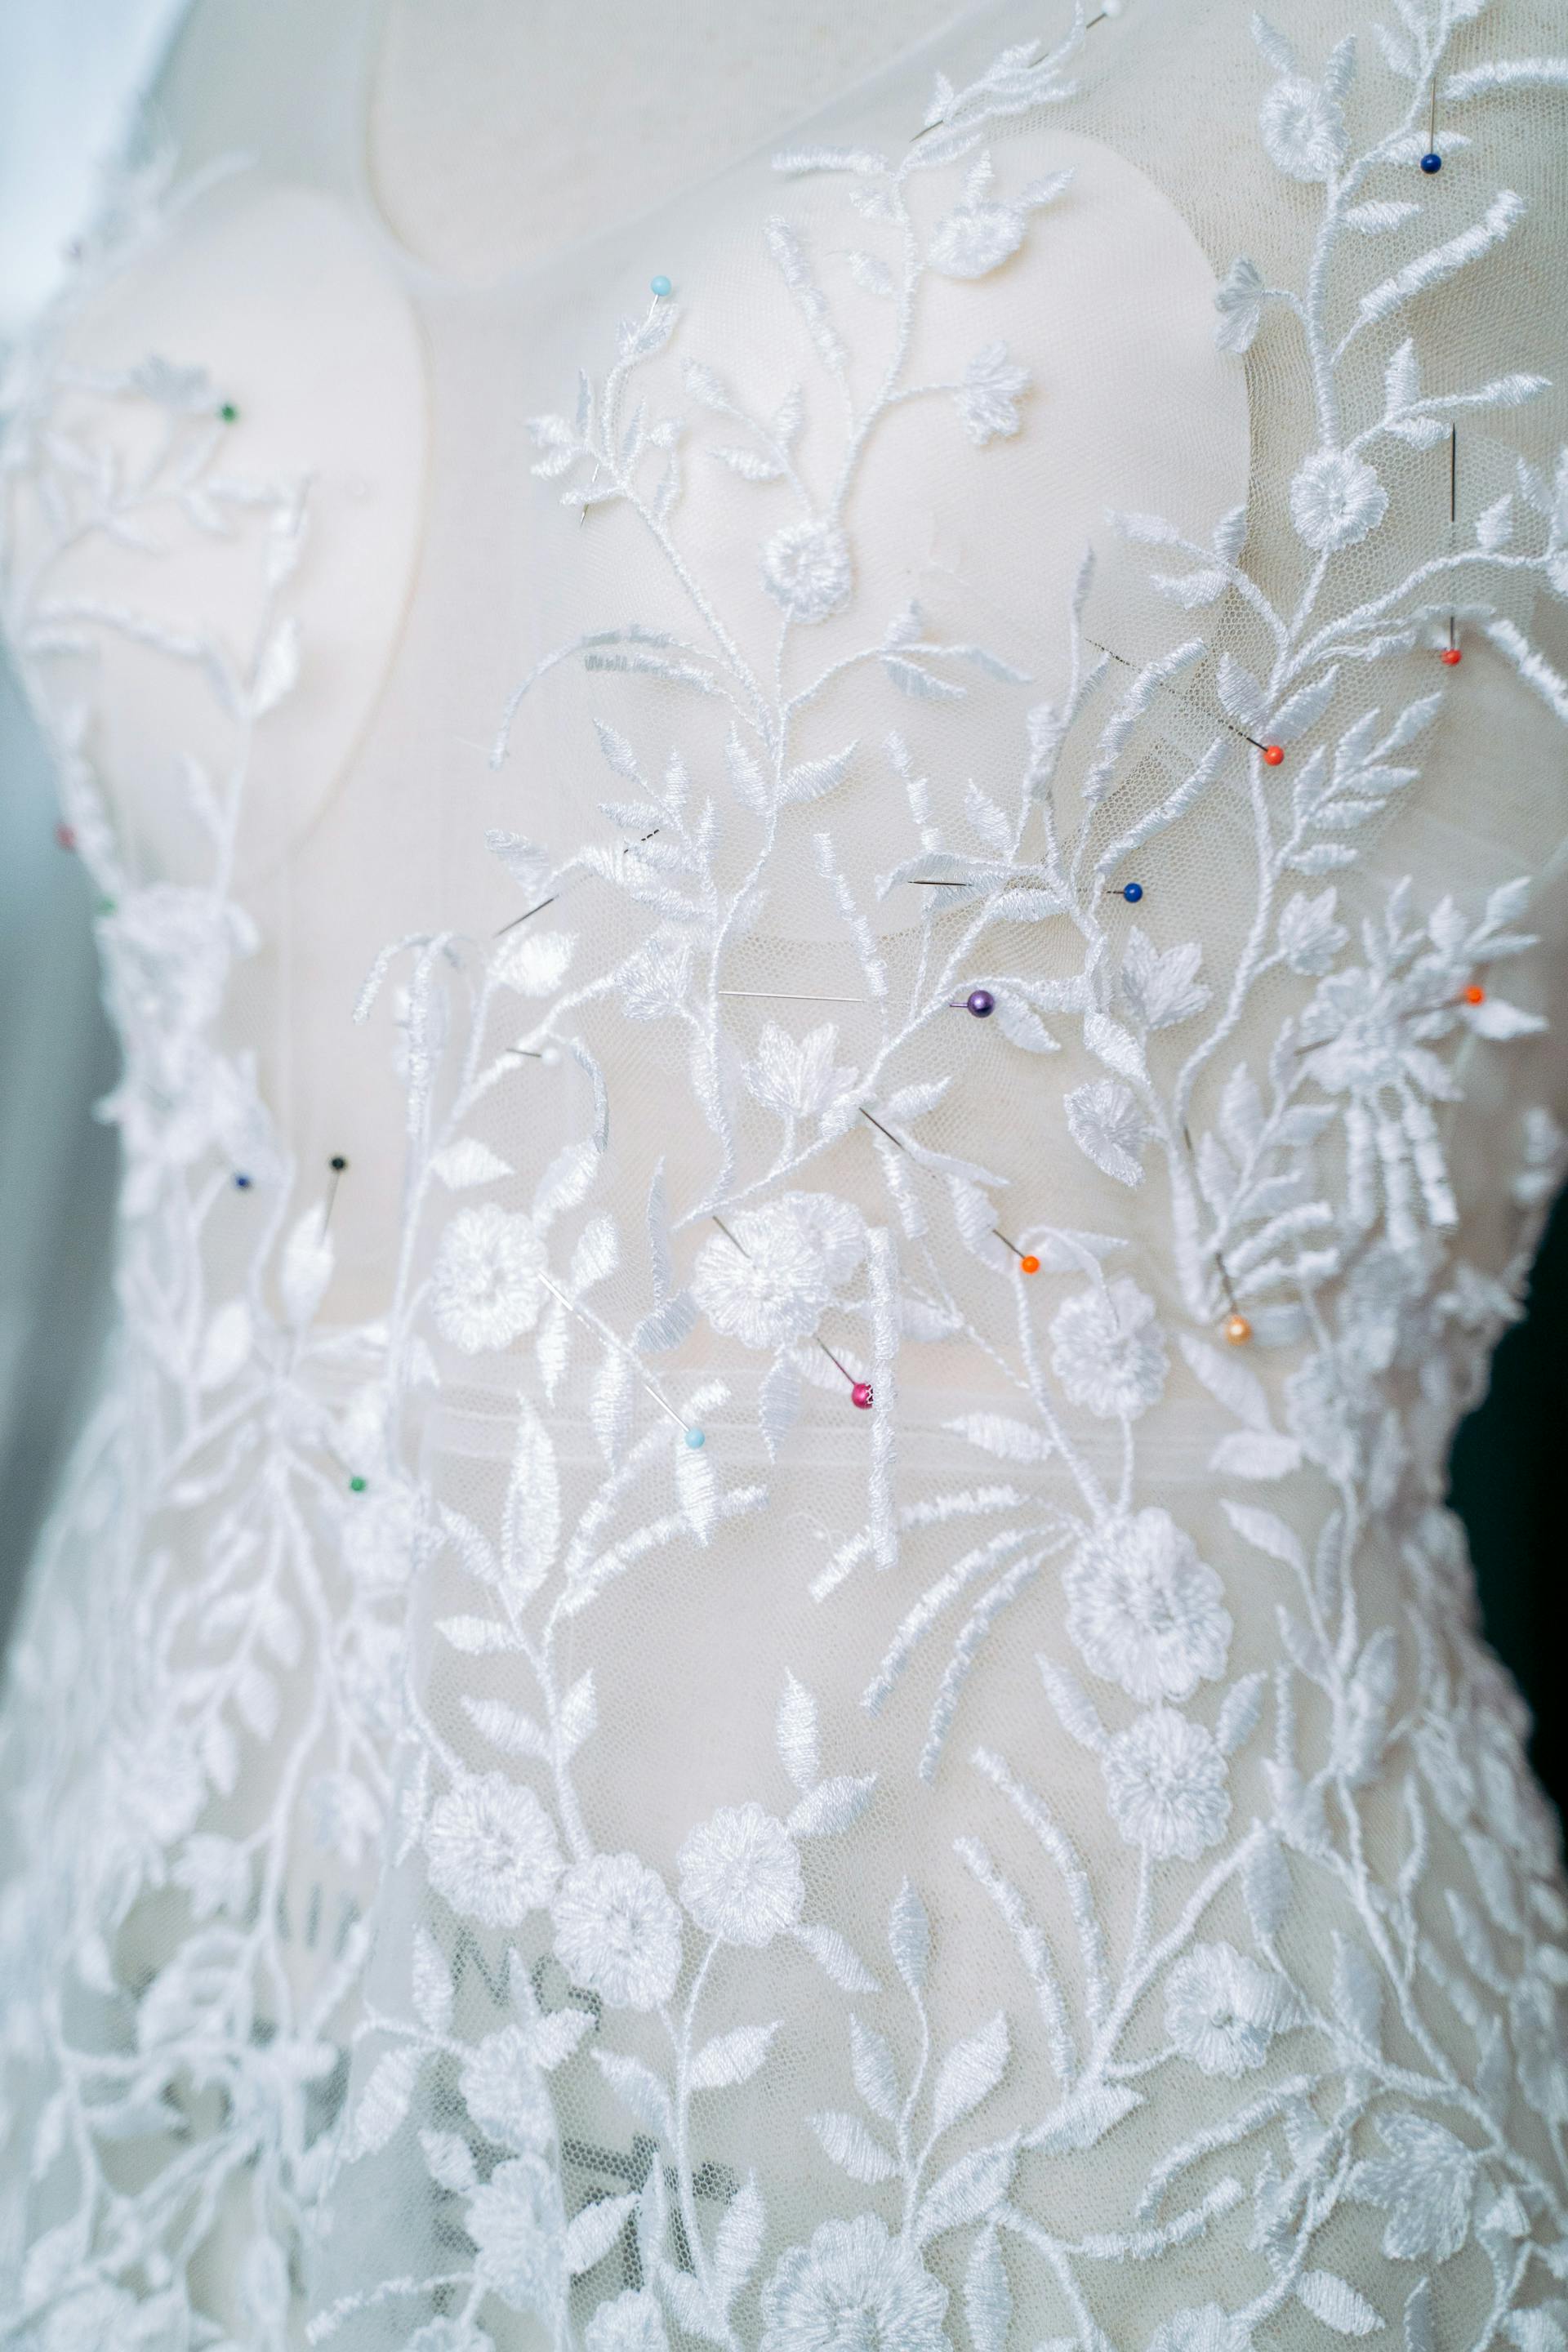 Primer plano de un vestido de novia | Fuente: Pexels